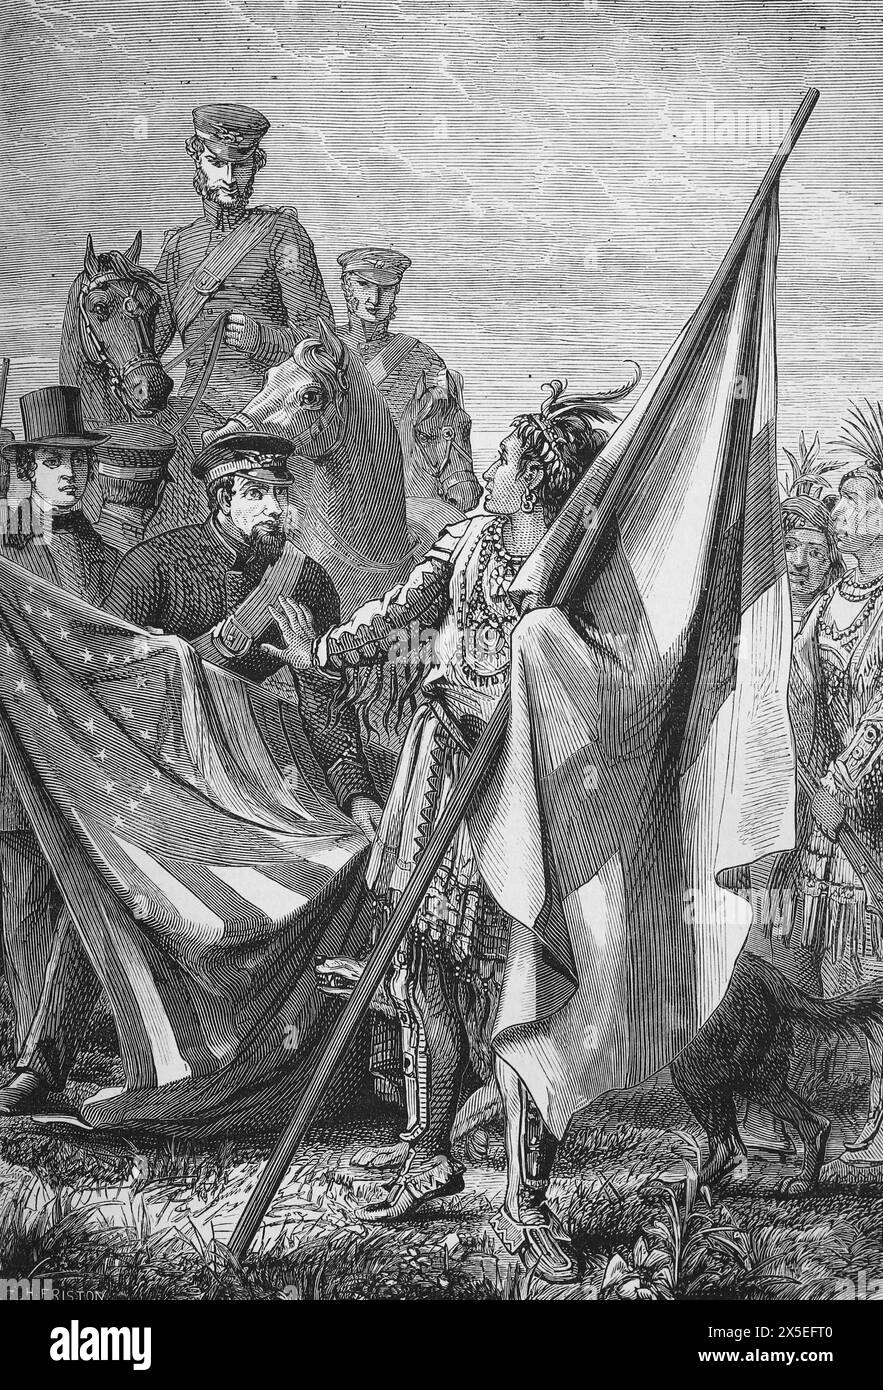 Il maggiore Sprague e gli indiani. Illustrazione tratta dalla storia dell'Inghilterra di Cassell, vol VII. New Edition pubblicato Circ 1873-5. Foto Stock